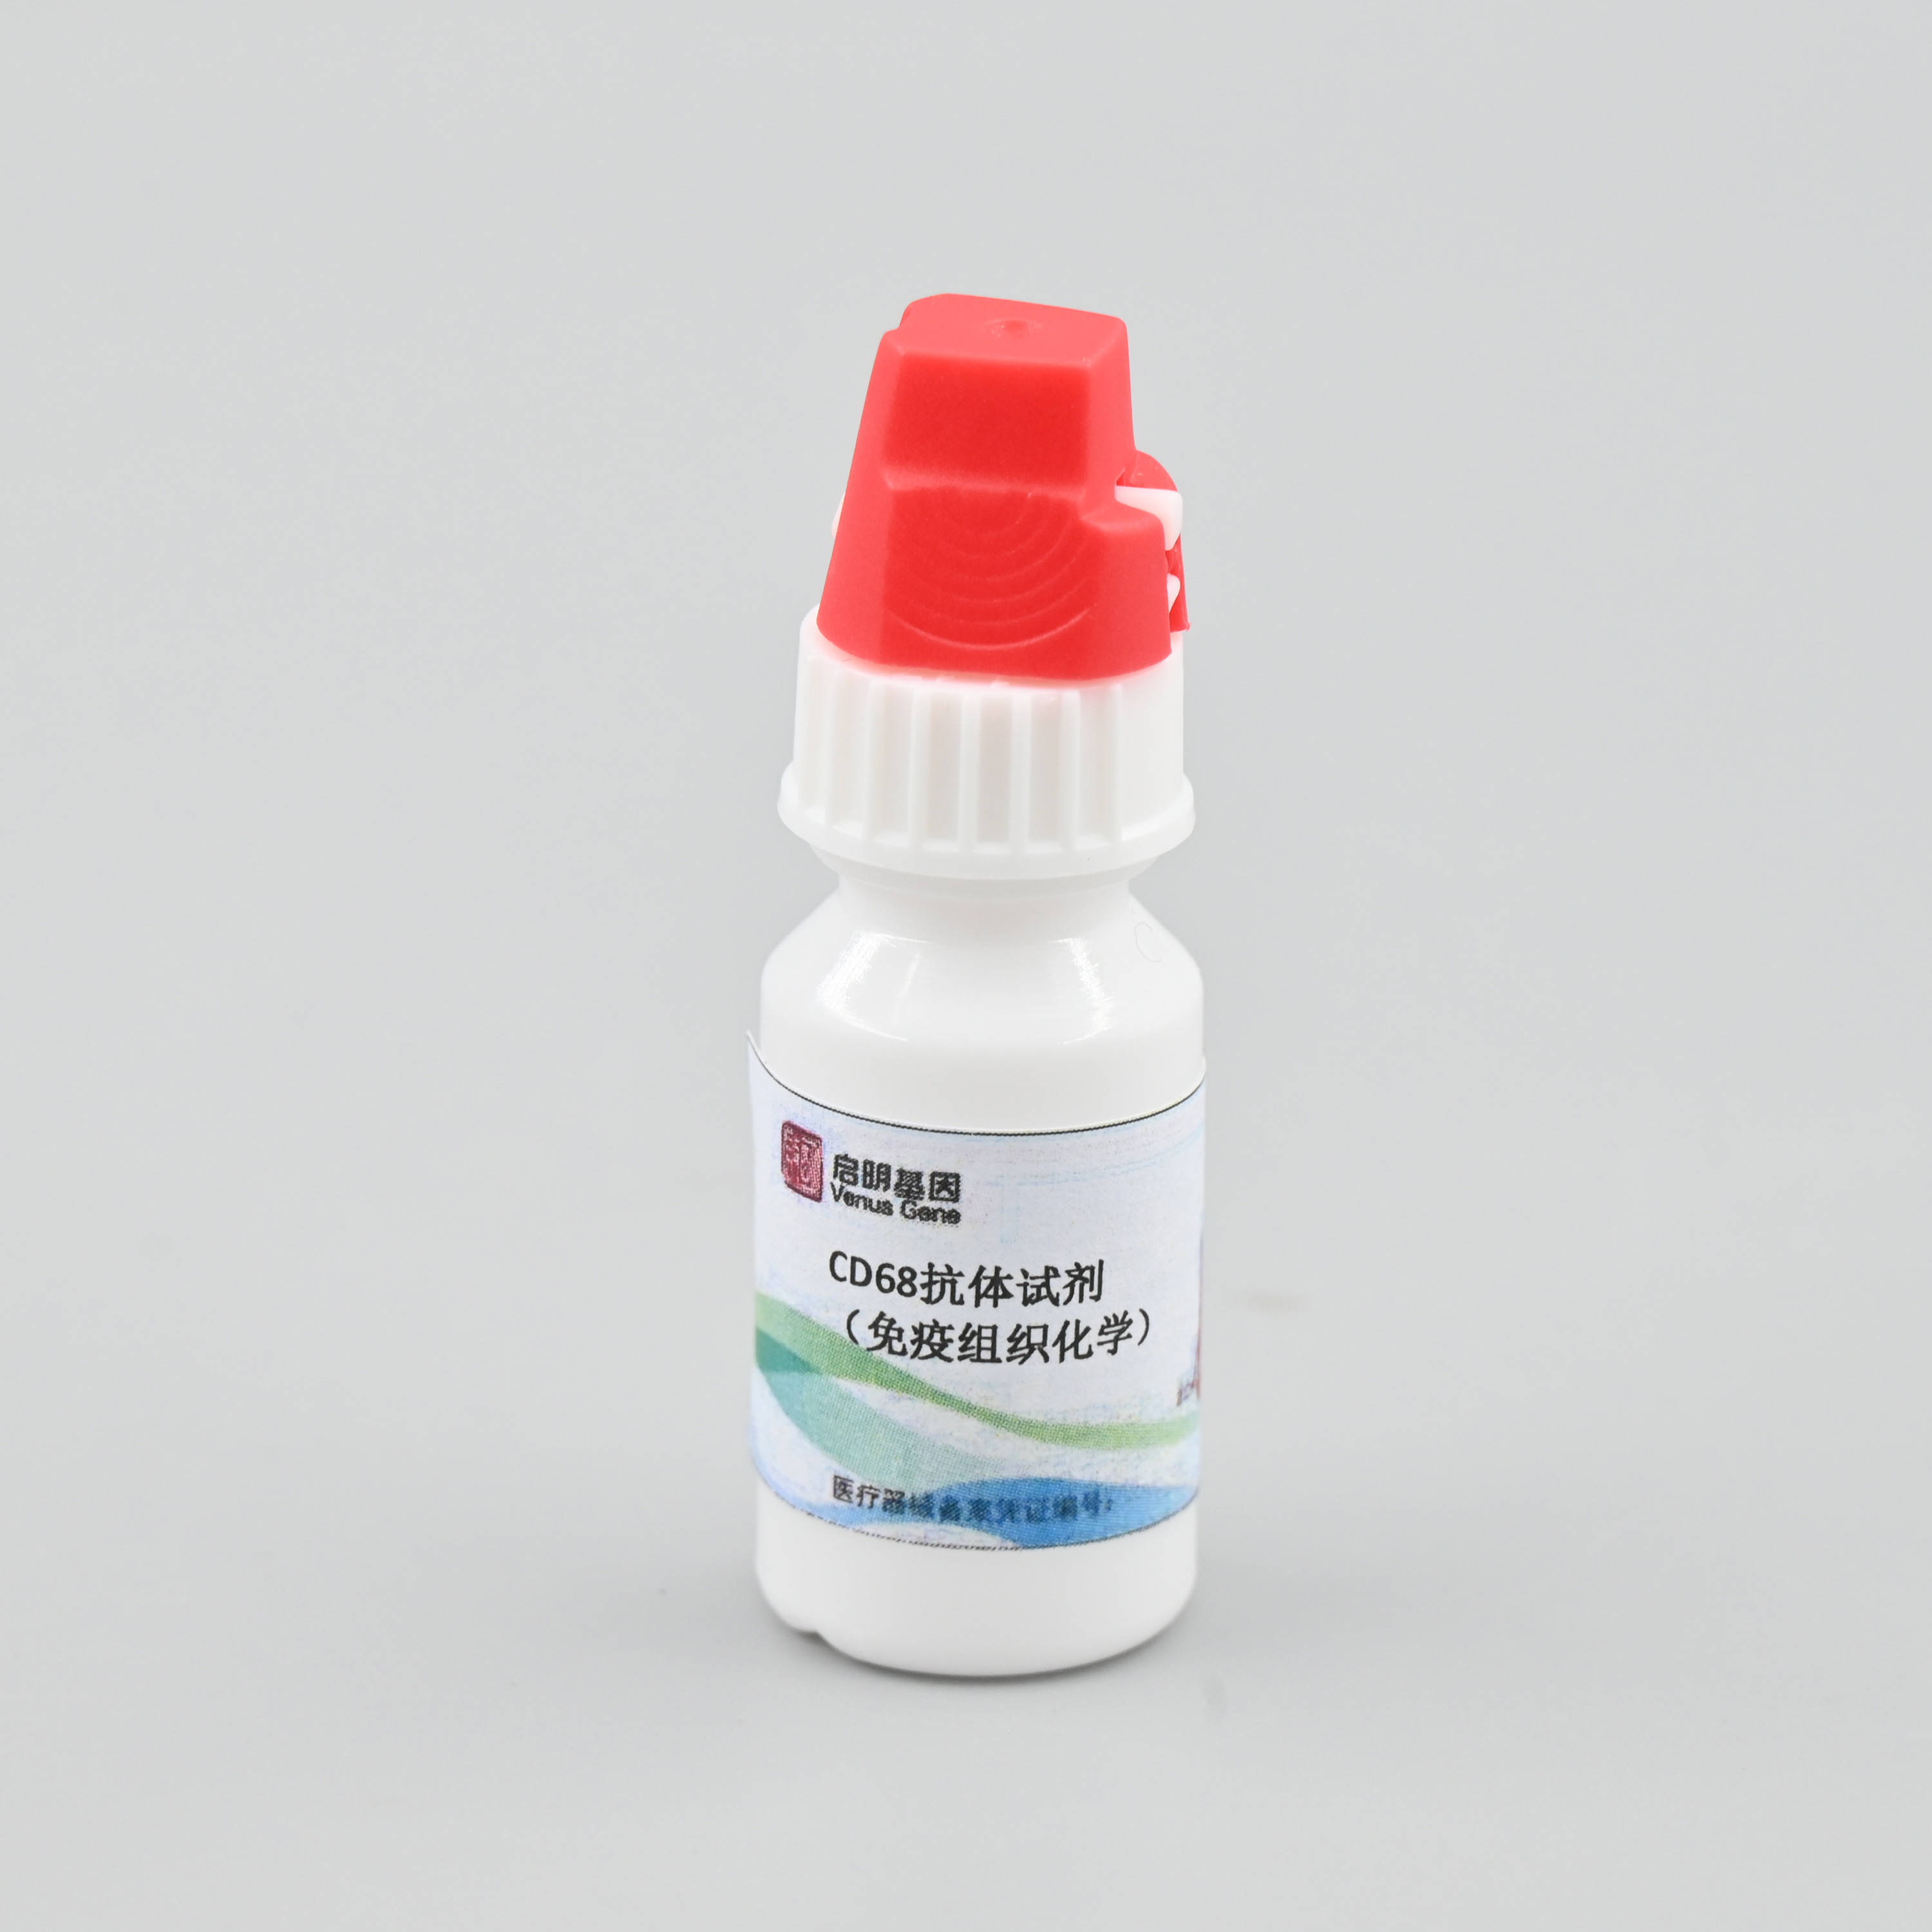 【启明基因】CD68抗体试剂/检测试剂盒（免疫组织化学）